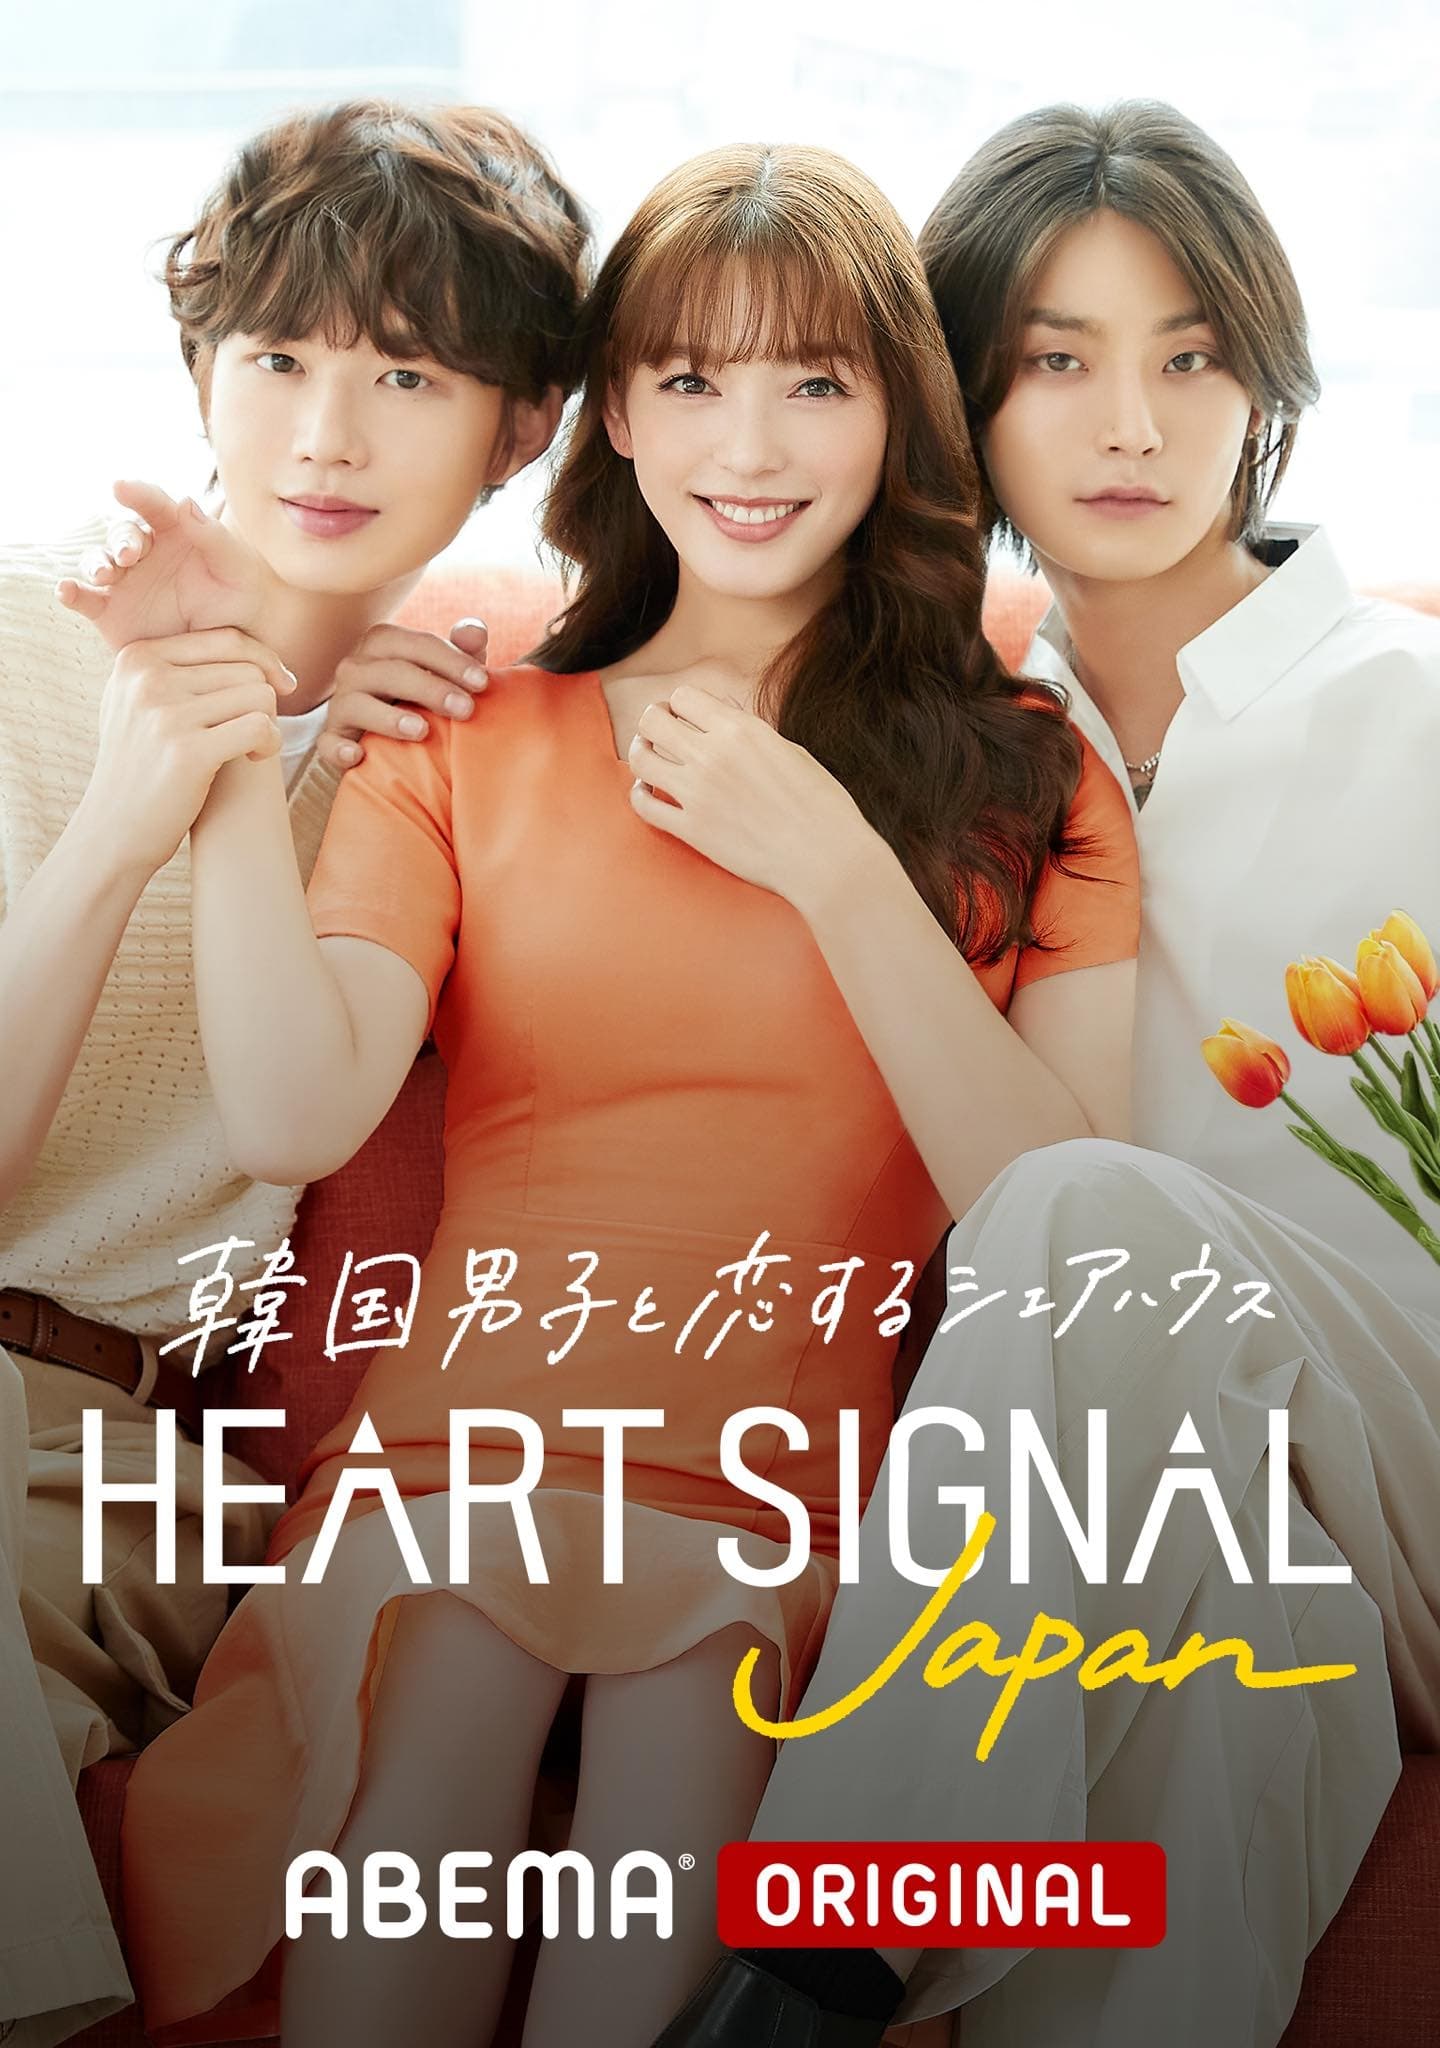 TV ratings for Heart Signal Japan in Brazil. AbemaTV TV series